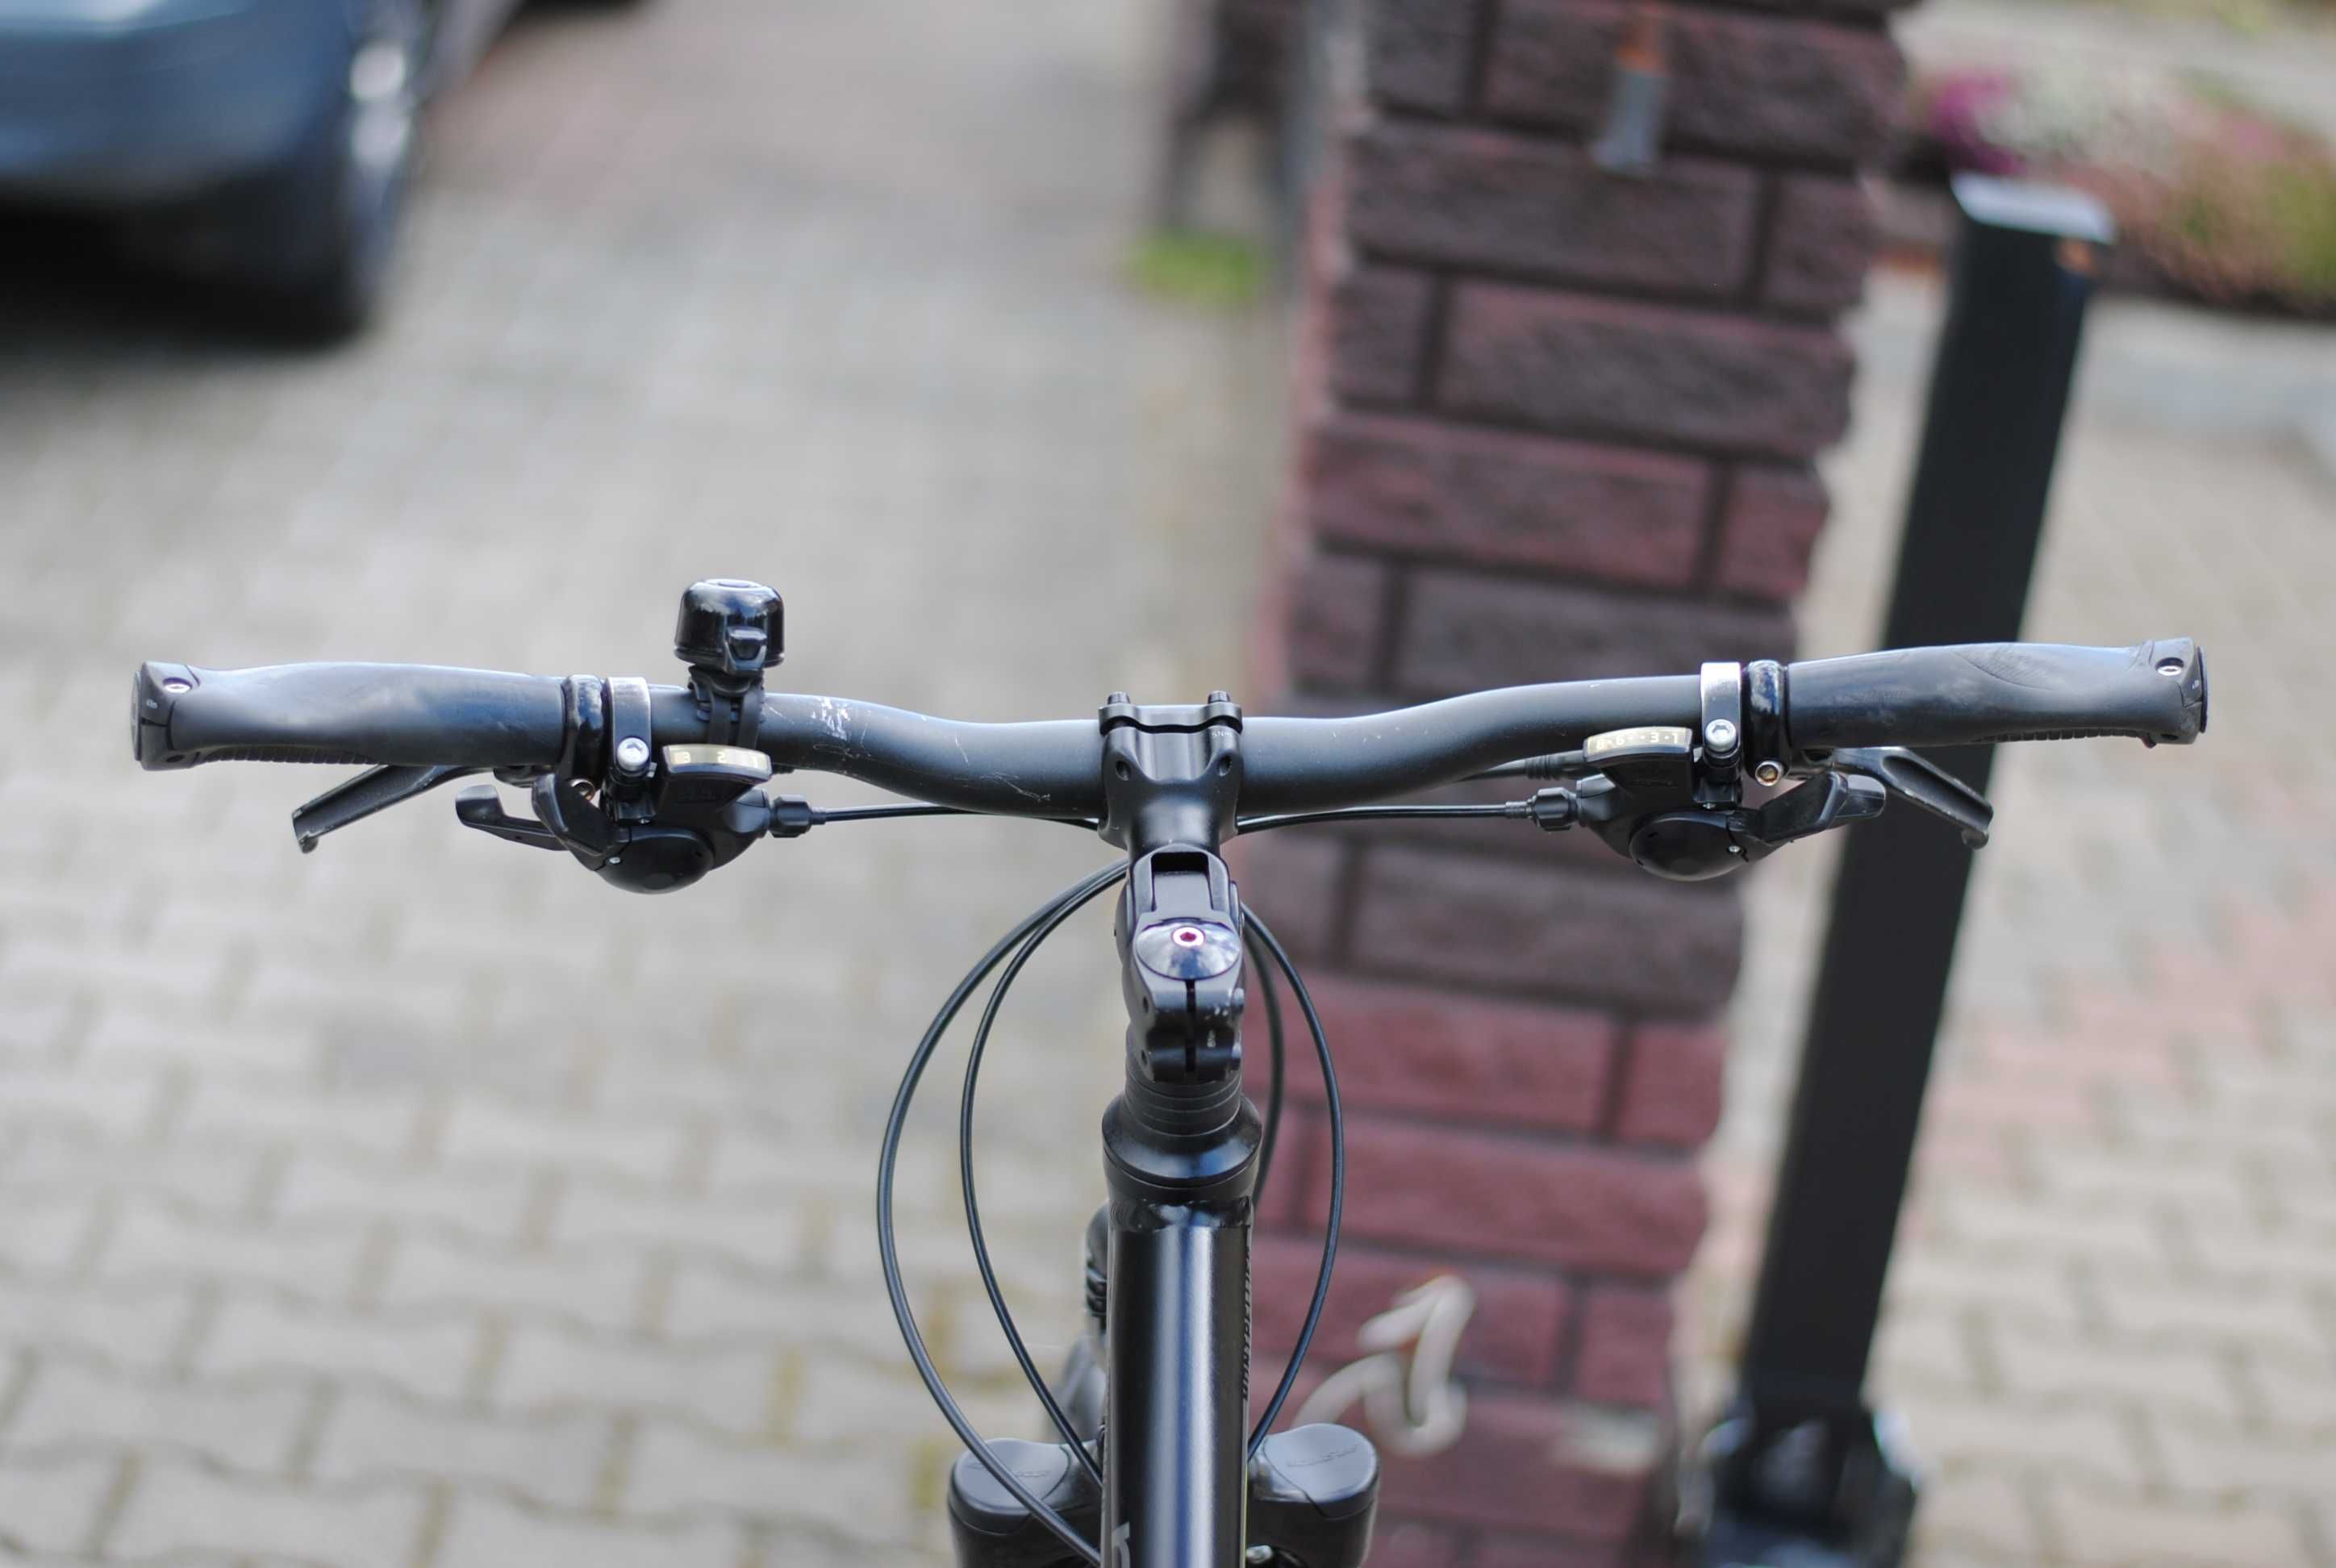 Damski miejski rower Rixe osprzet shimano, hydraulika tarcze, zobacz